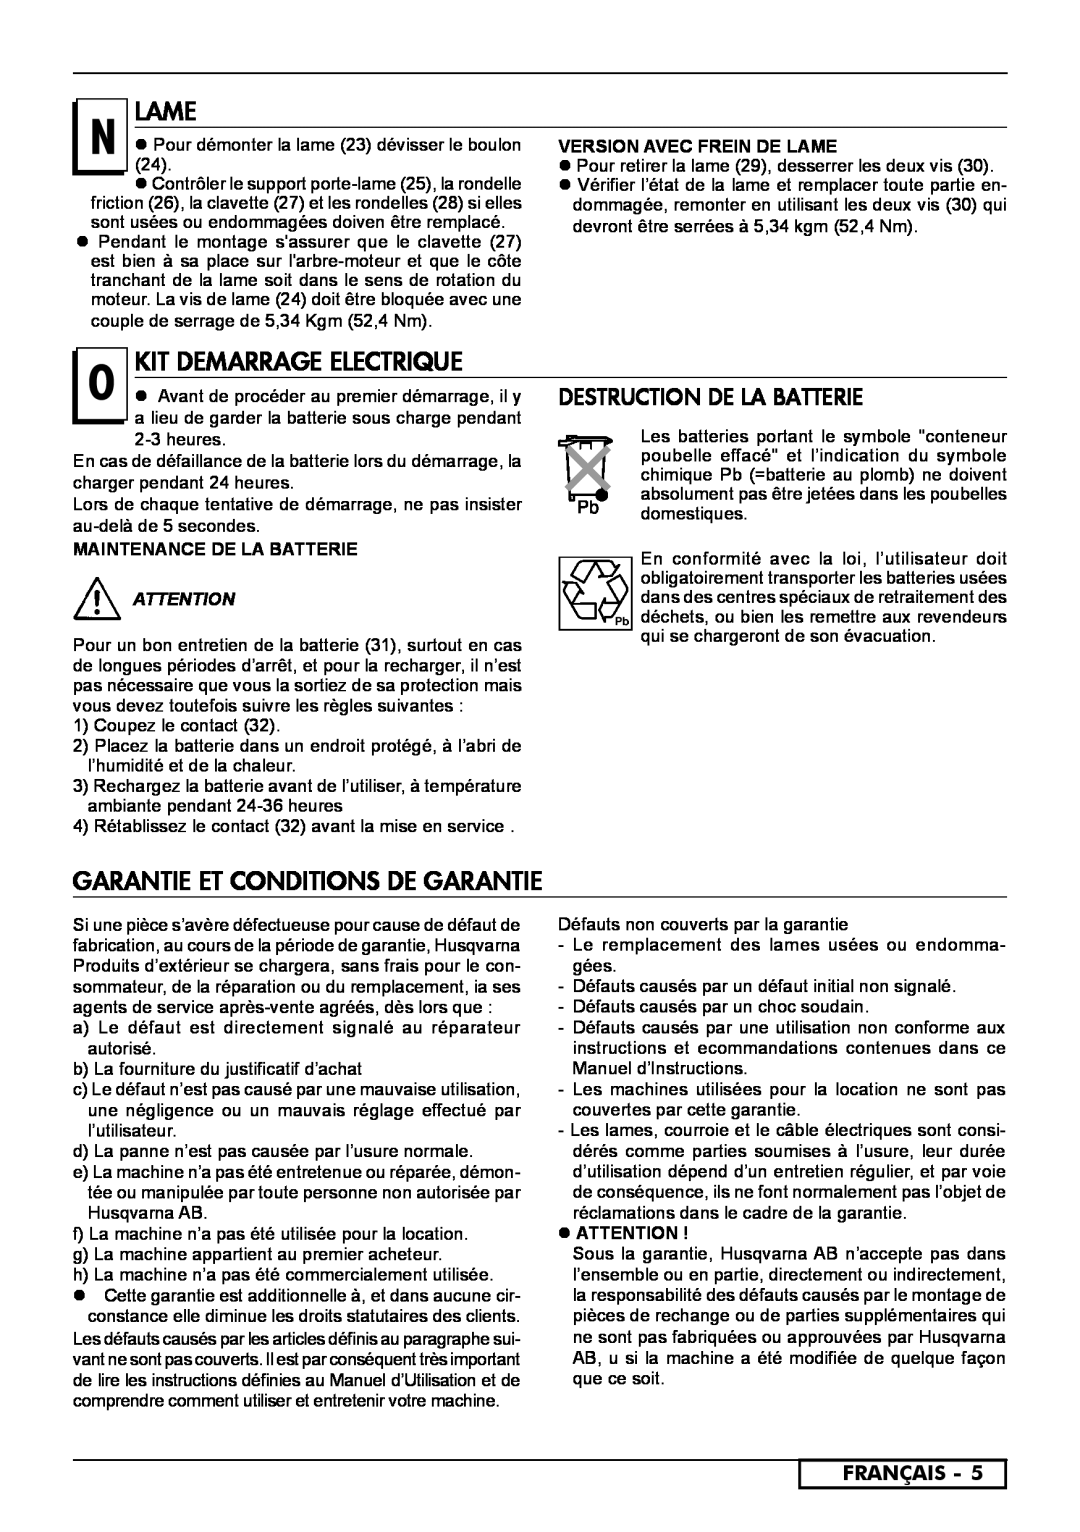 McCulloch 966532001, 966531901 Lame, Garantie et Conditions de Garantie, Français, Maintenance De La Batterie,  Attention 